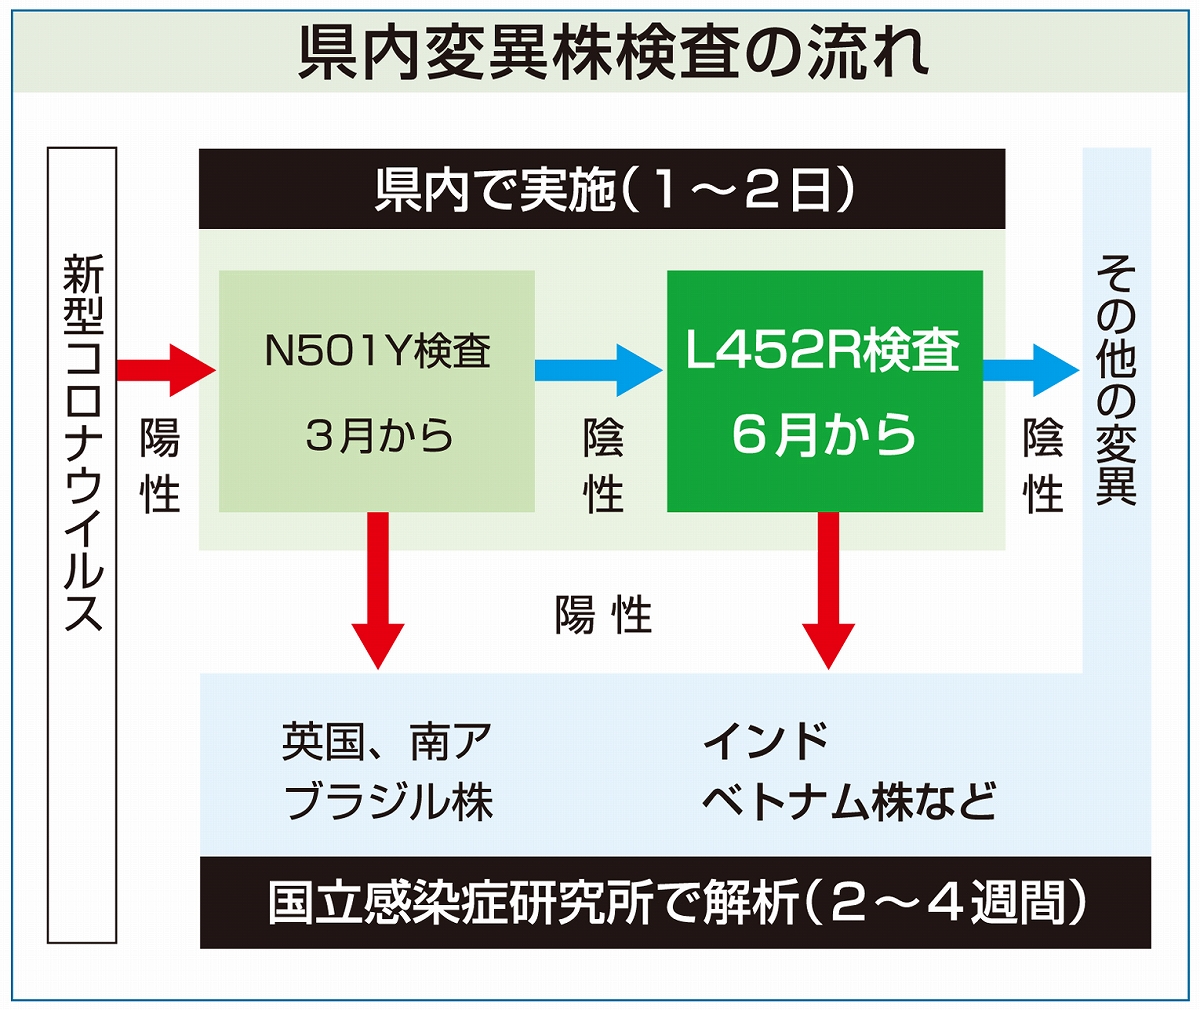 新型コロナ「インド株」 福井県独自に検査体制を整備、6月中旬から開始